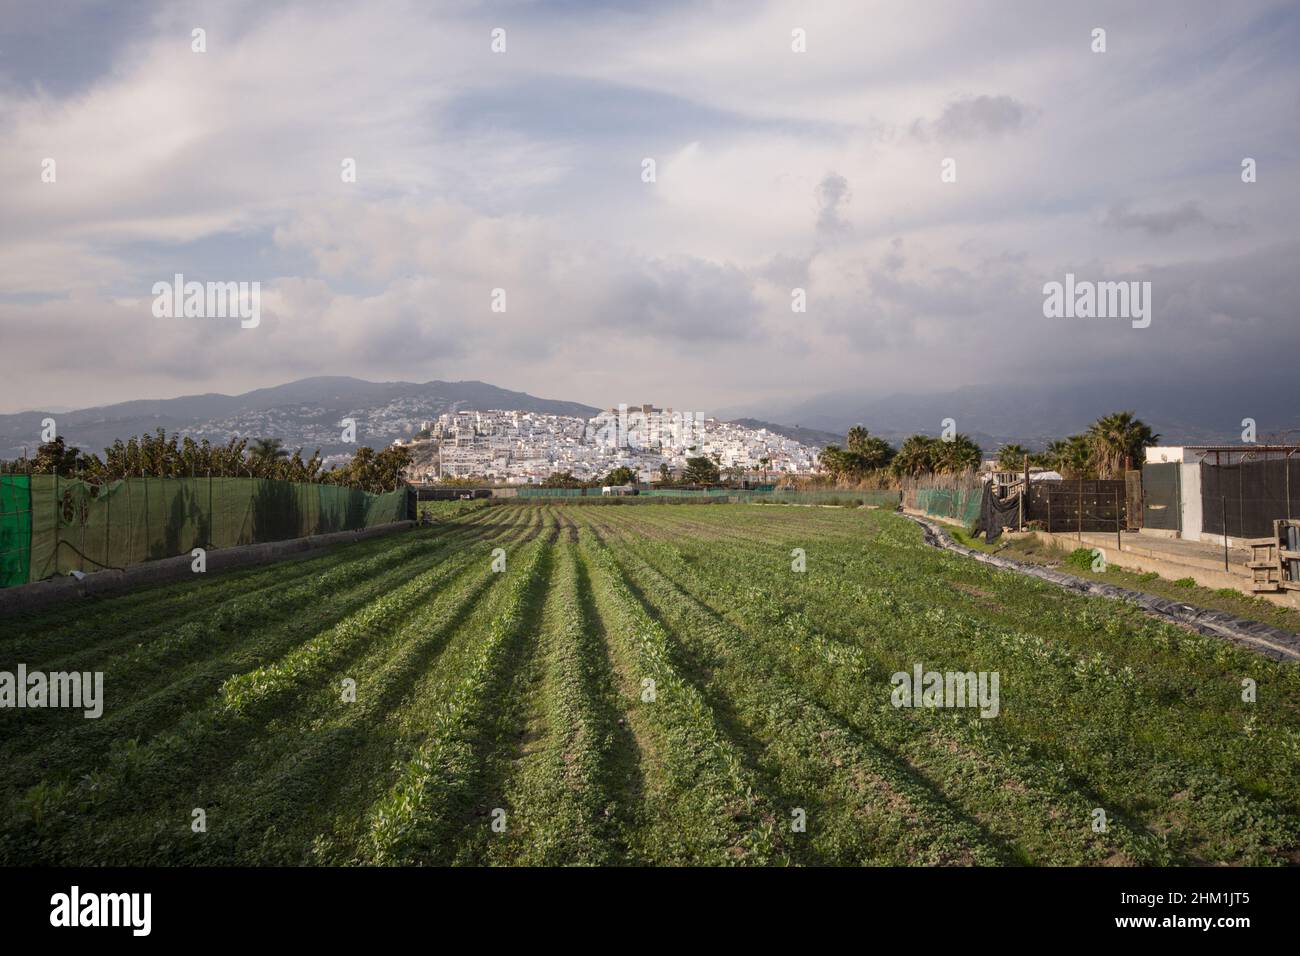 Die spanische Stadt Salobreña umgeben von Ackerland auf einem Hügel, Costa Tropical, Granda, Spanien. Stockfoto